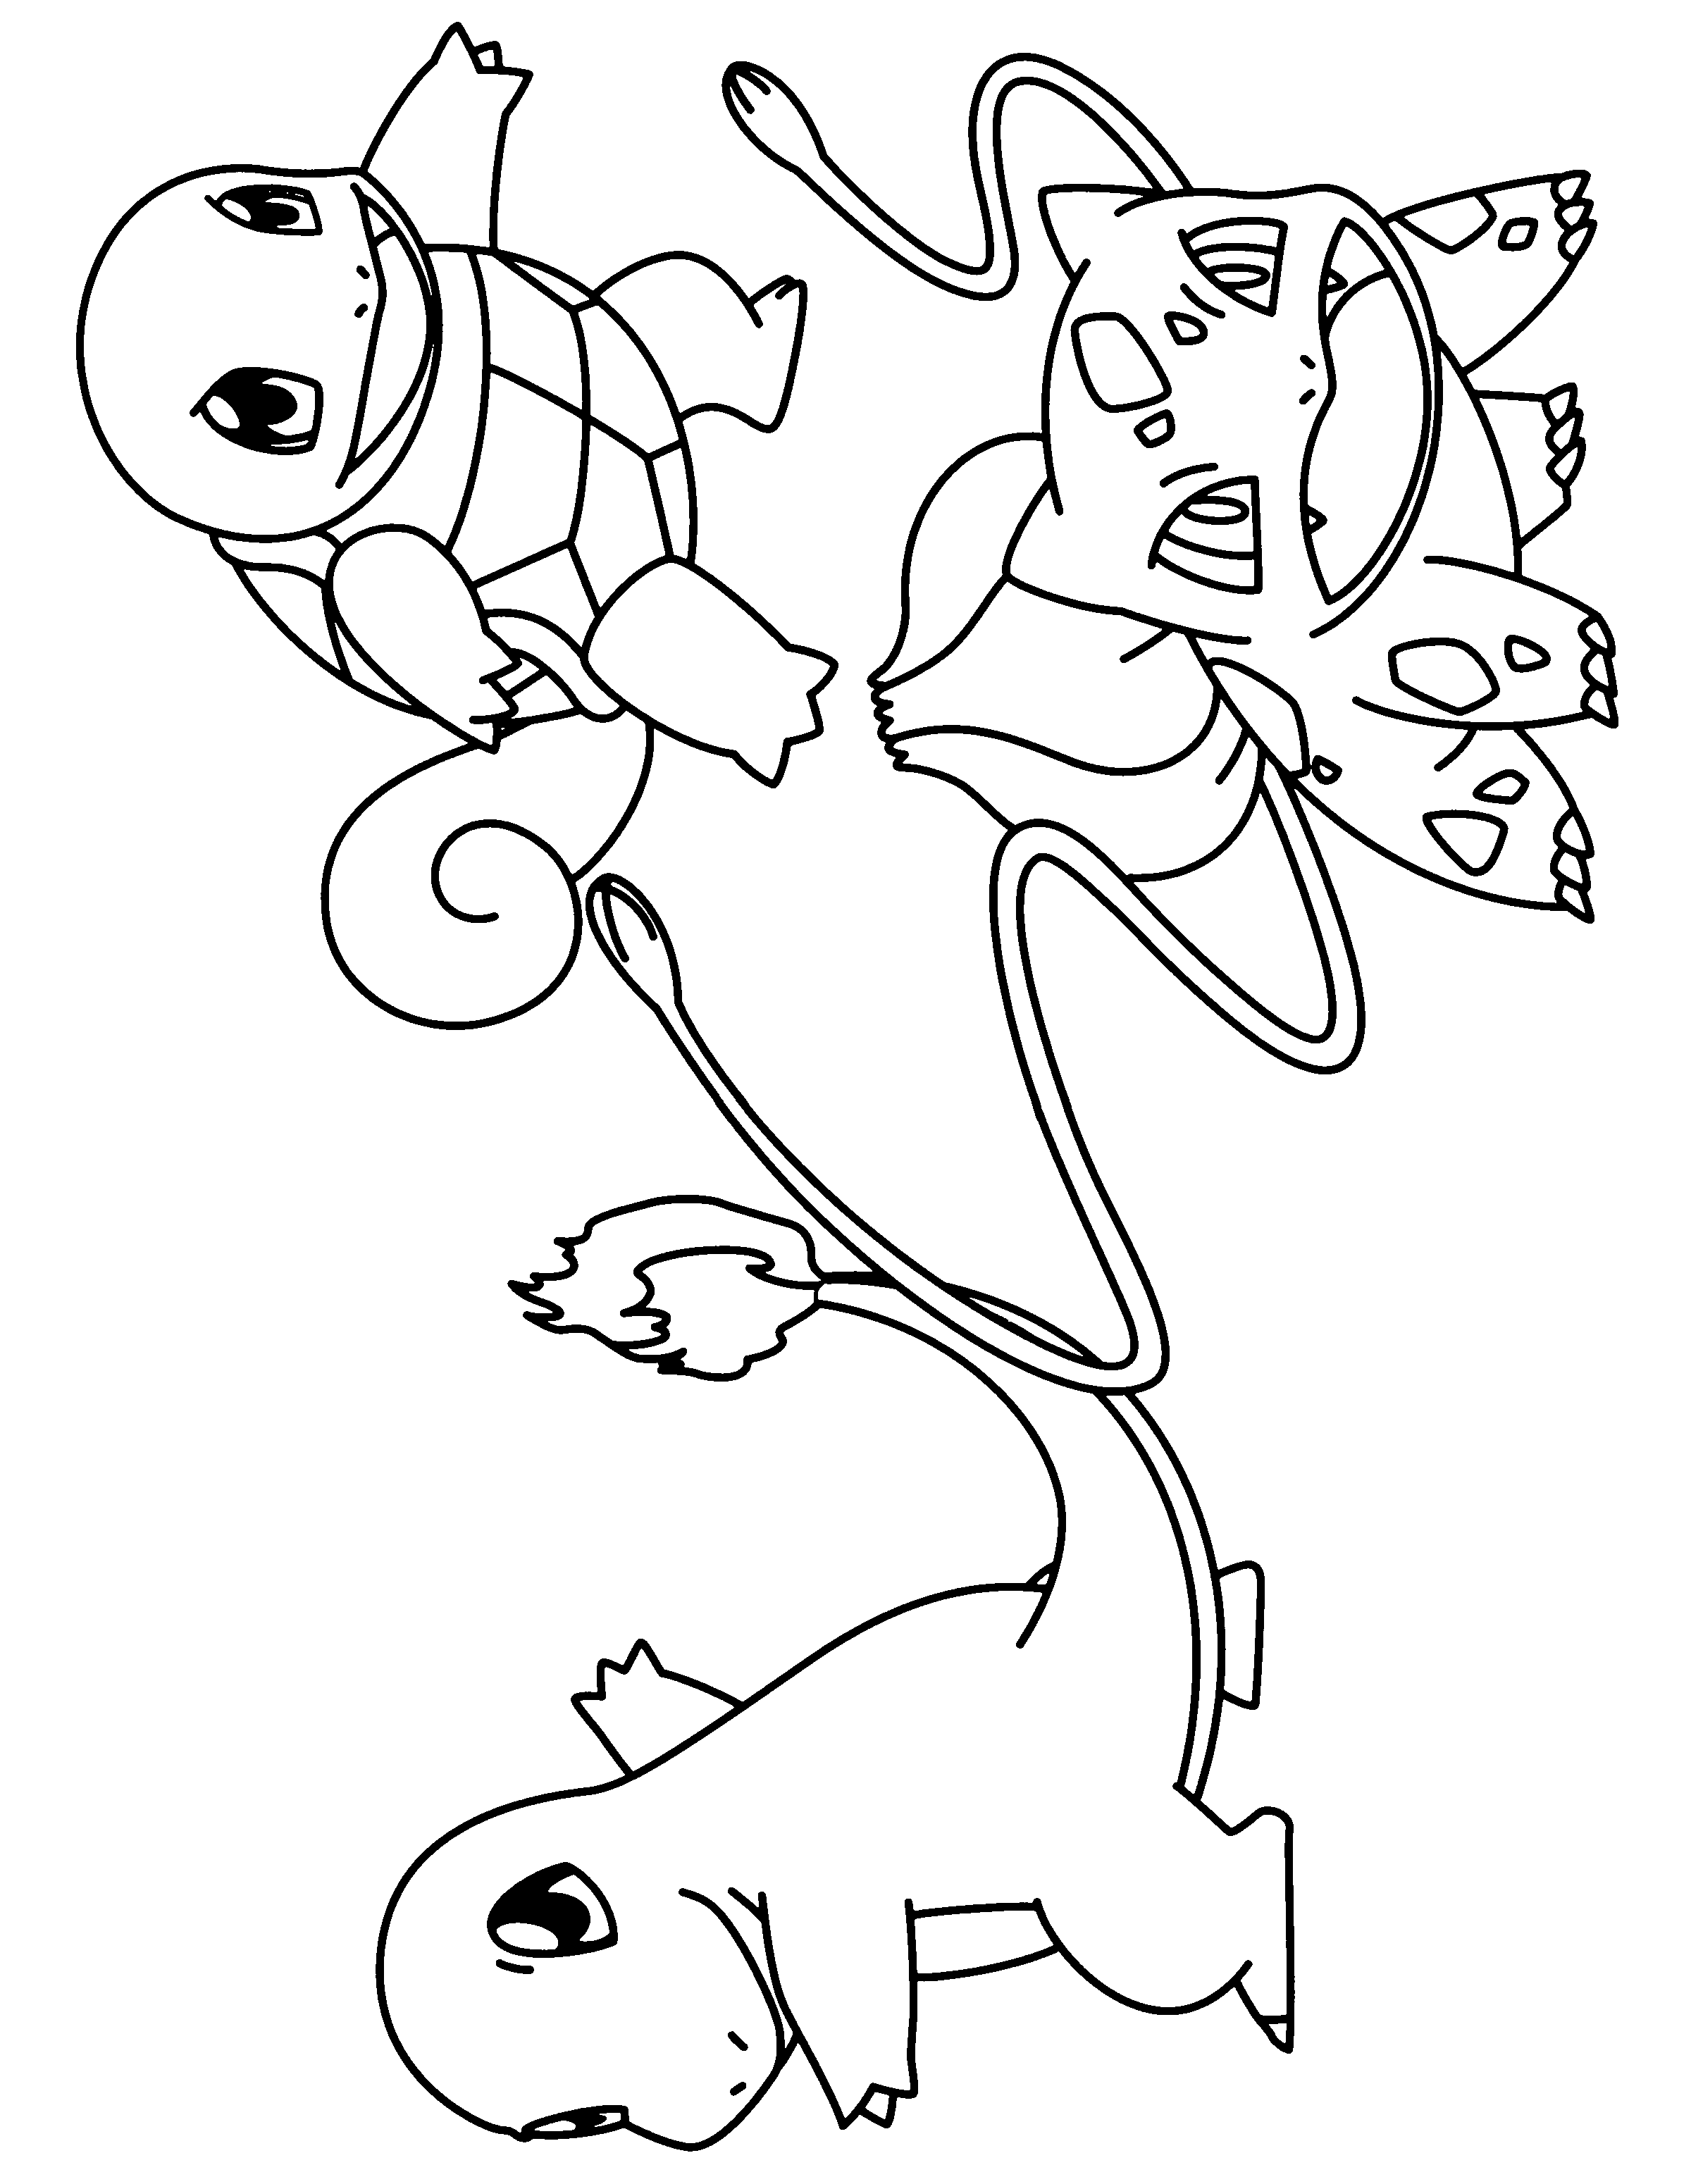 dibujo-para-colorear-pokemon-imagen-animada-0735